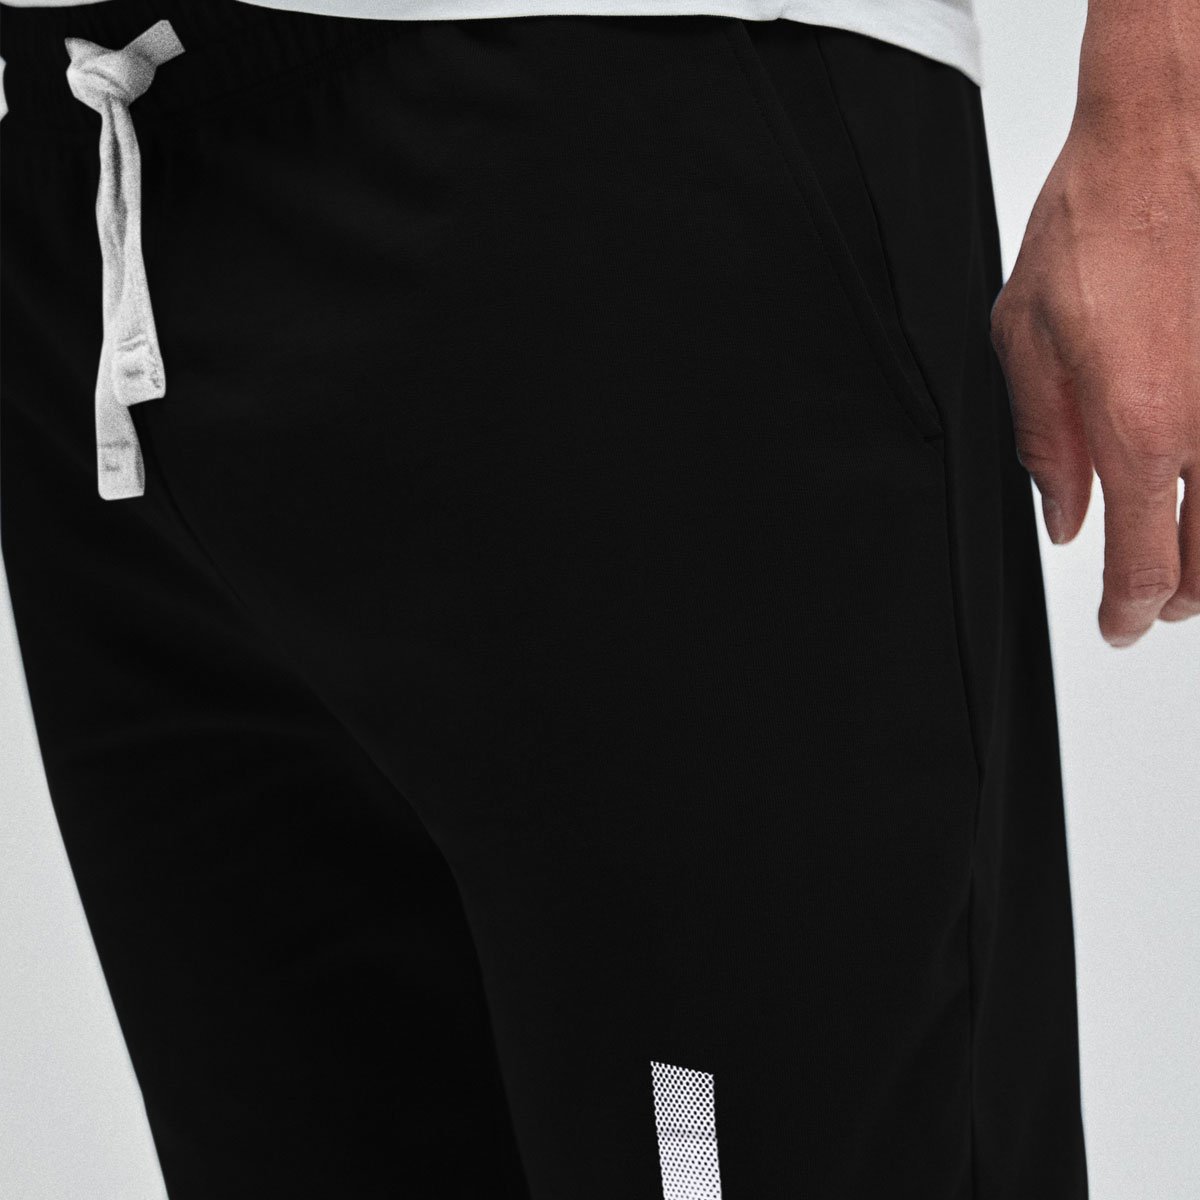 Hlstr Printed Summer Trouser - Sharp Black /White : Buy Online At Best ...